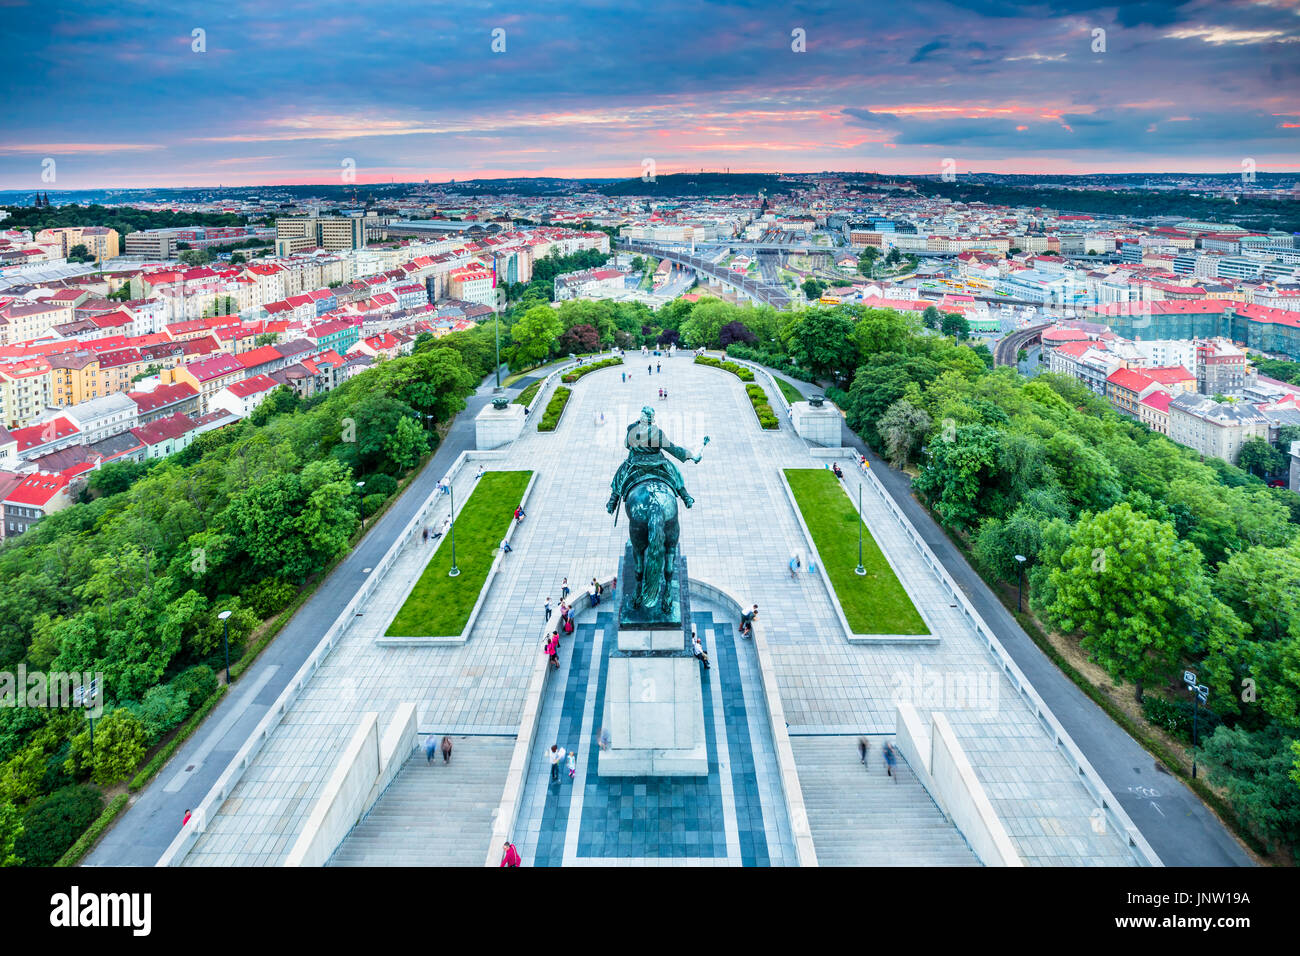 L'Europe, République tchèque, Tchéquie, Prague, la colline de Vitkov, Zizkov, Statue équestre de Jan Zizka de Trocnov, troisième plus grande statue équestre en bronze Banque D'Images